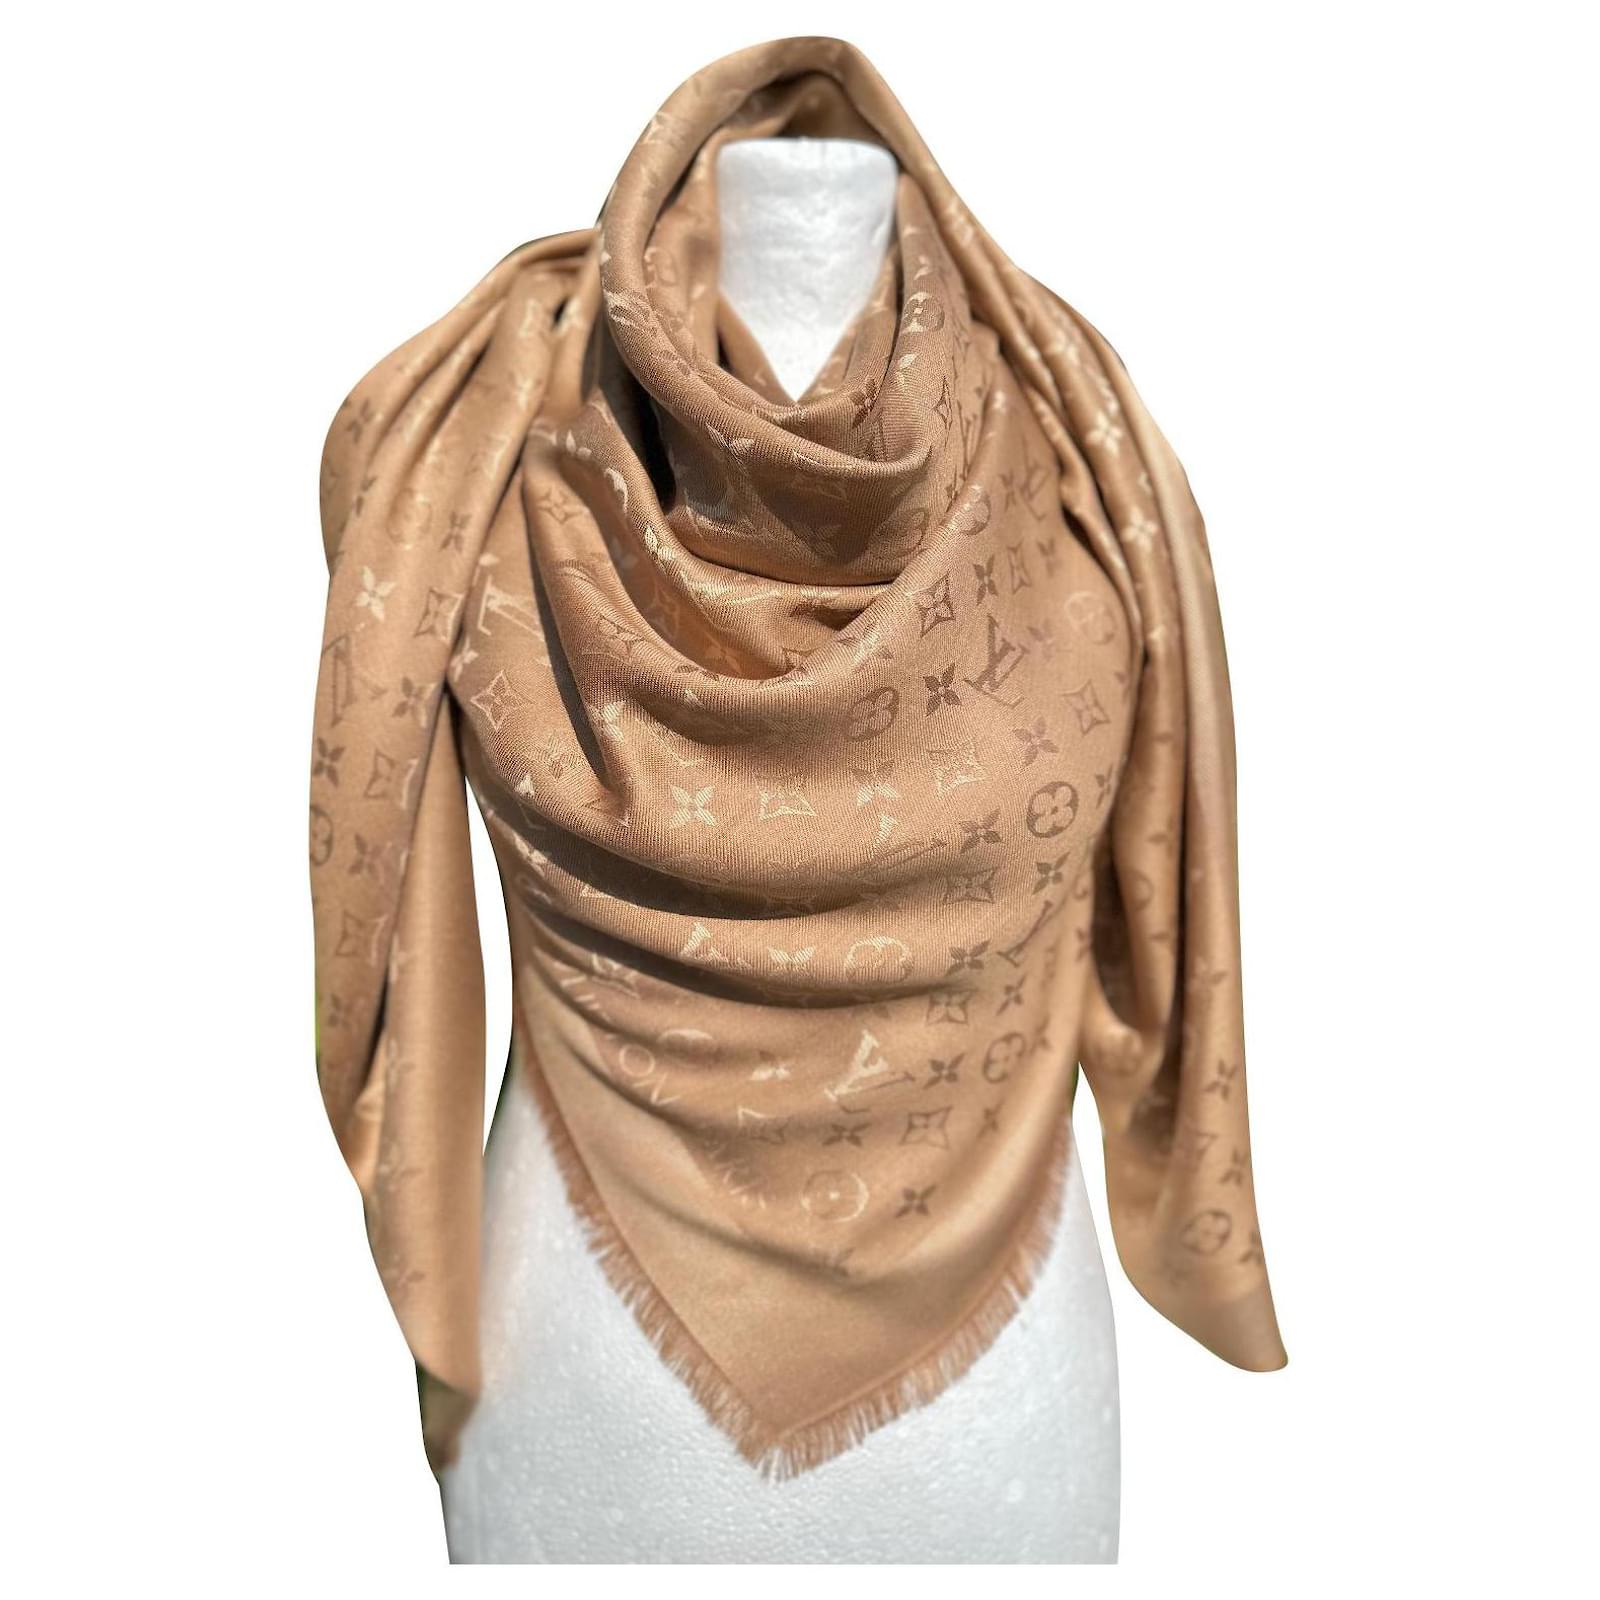 FIVE SPIKES - Merritt Beck  Louis vuitton scarf, Louis vuitton scarf  outfit, Lv scarf